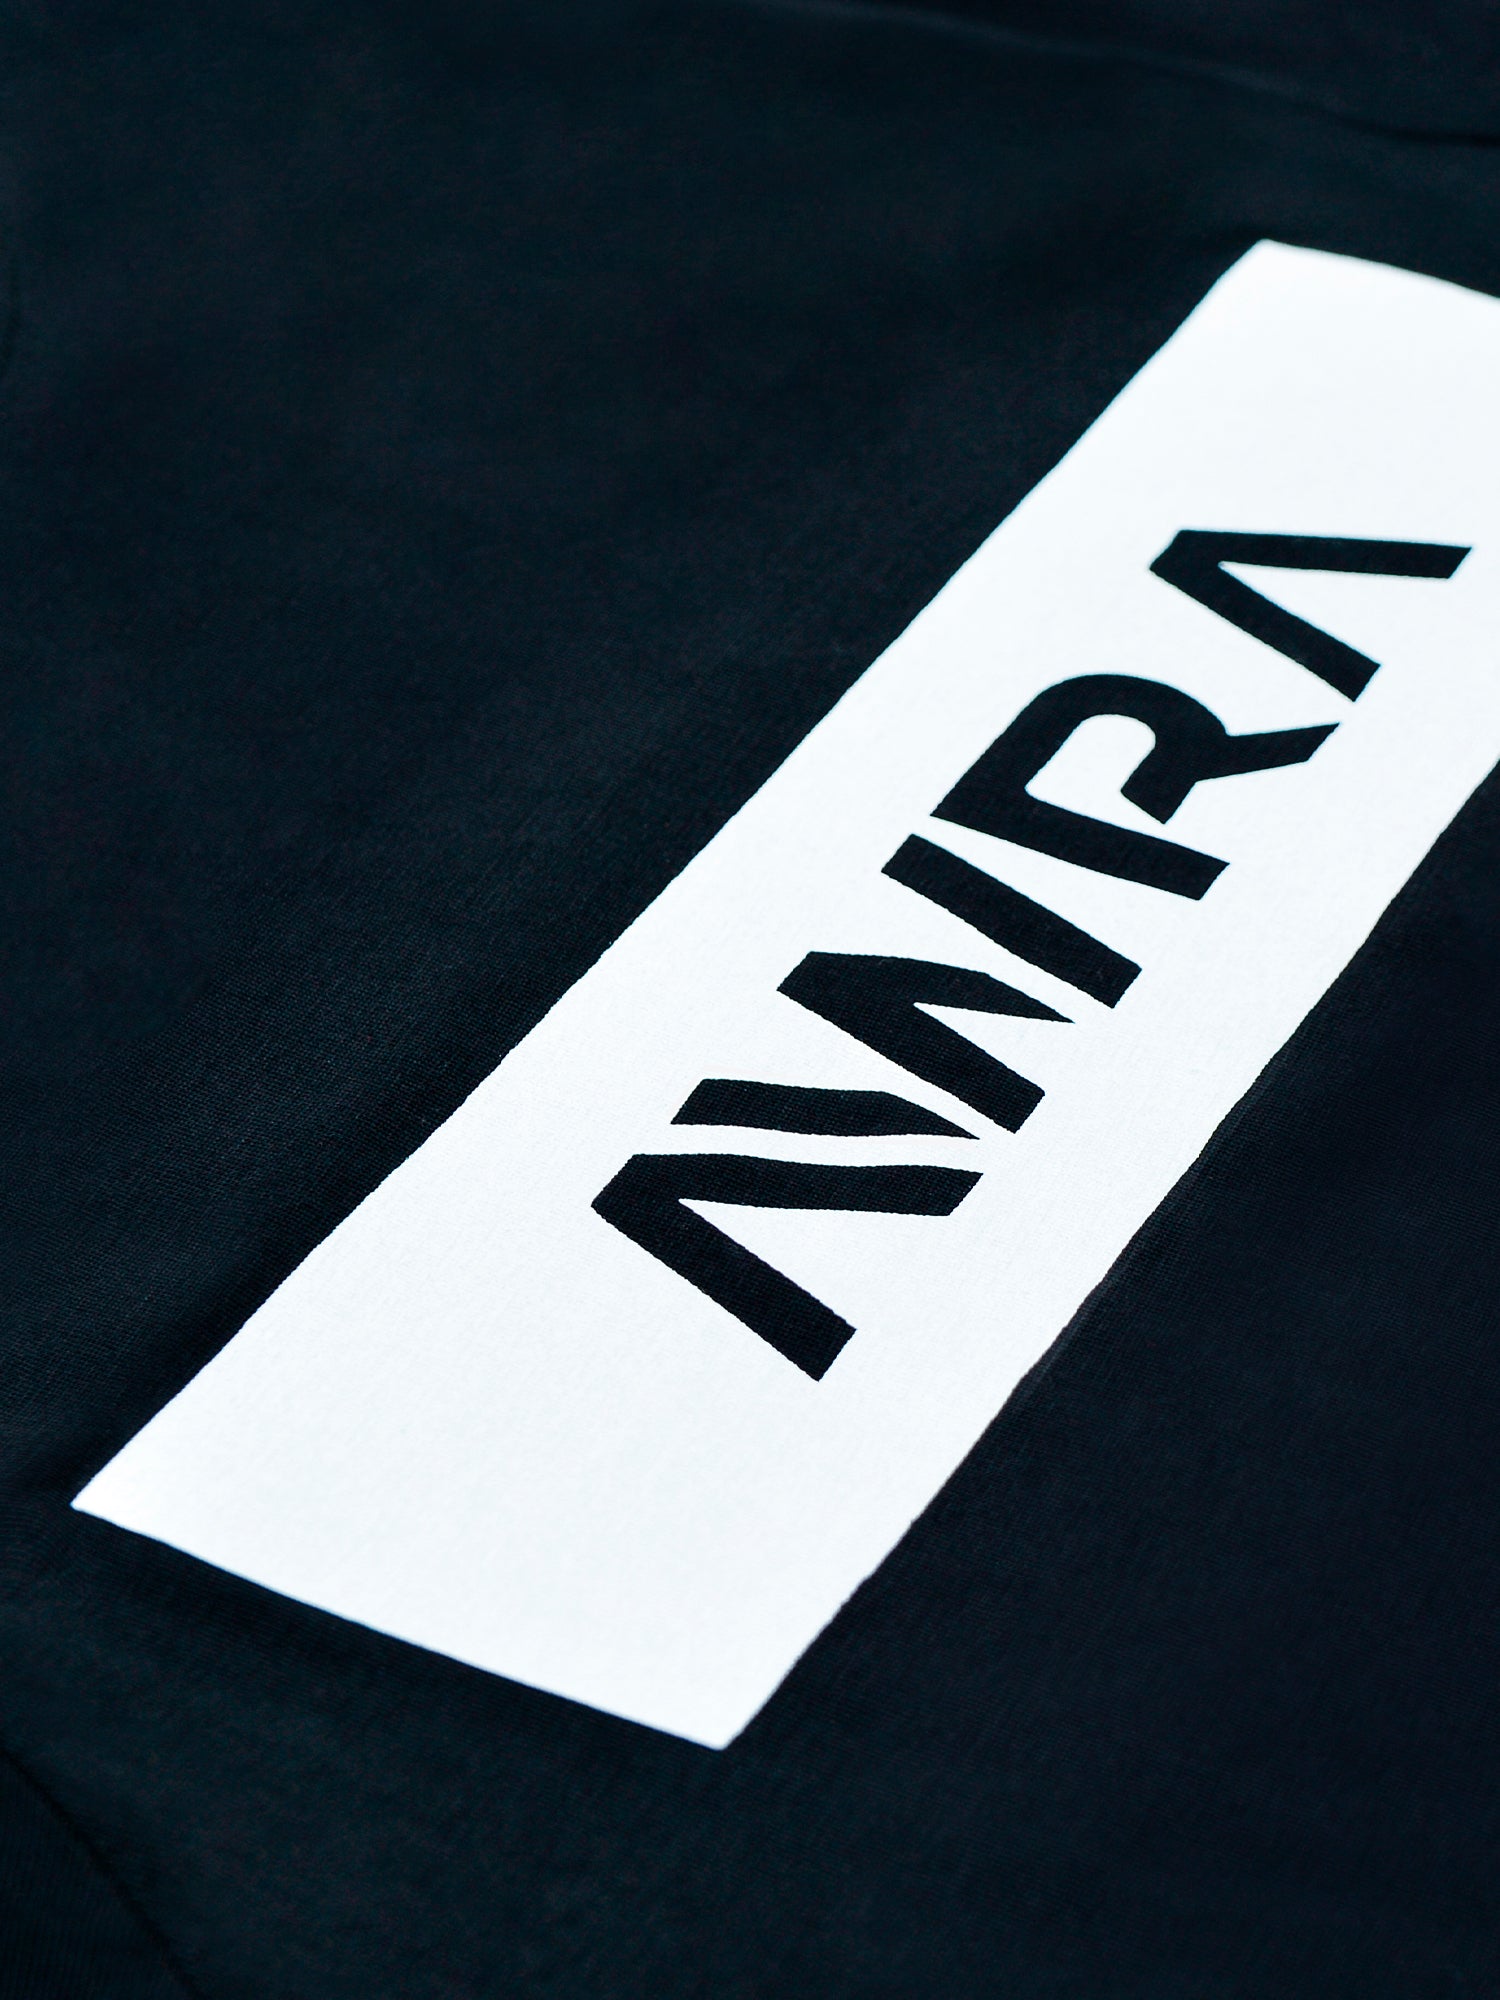 Camiseta AWRA Box Logo